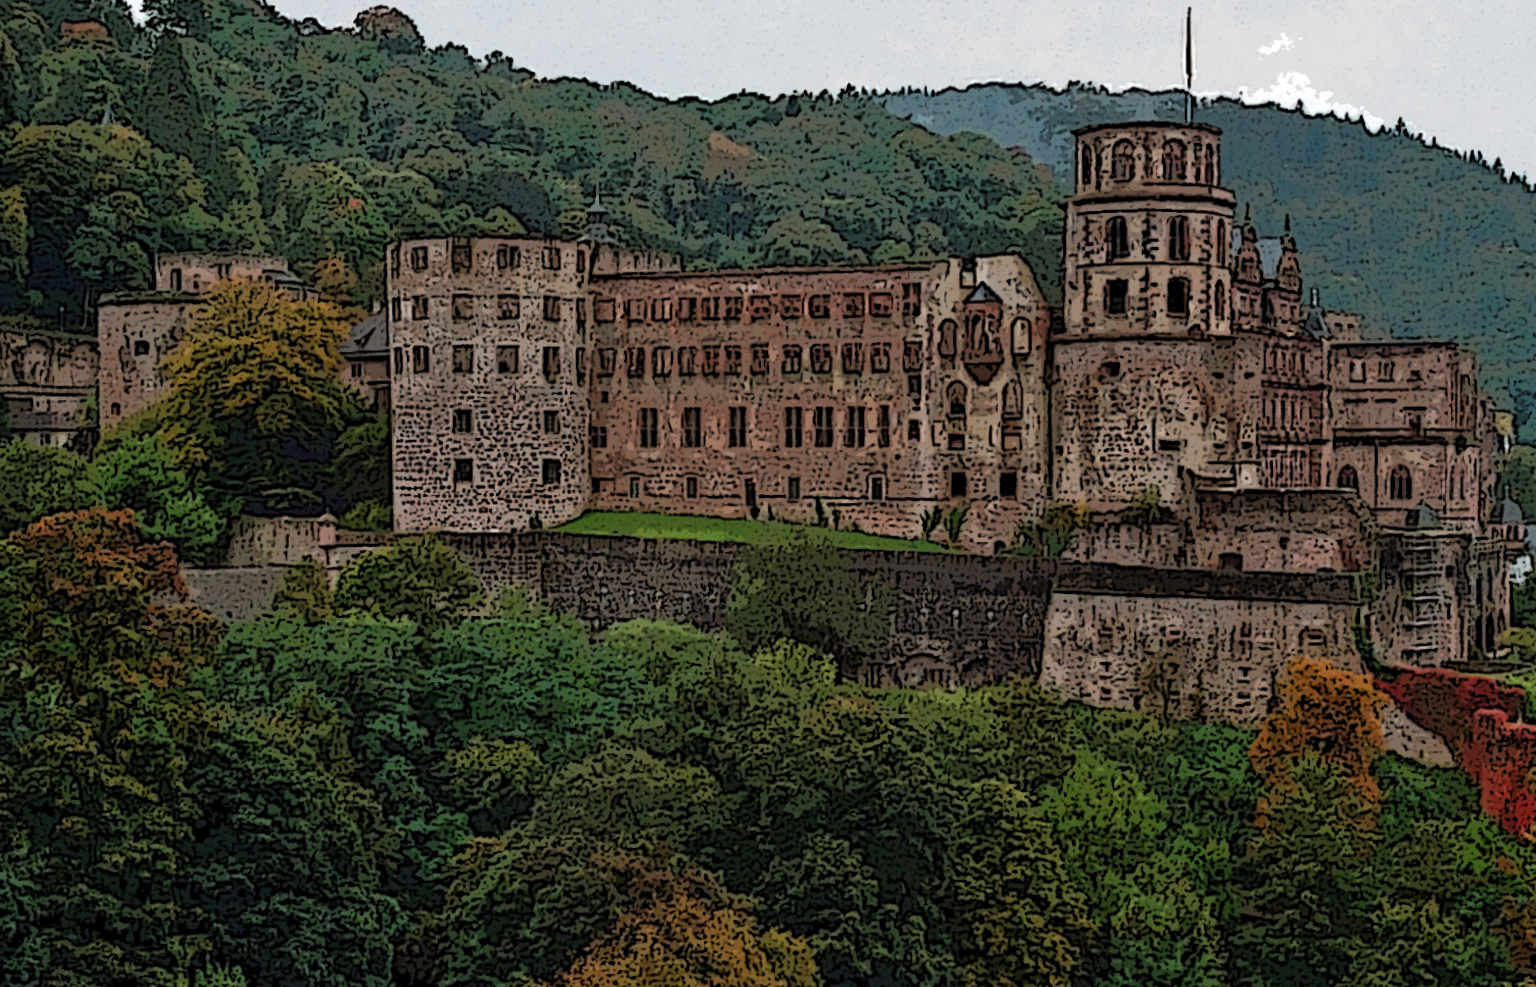 "Schloss Heidelberg"